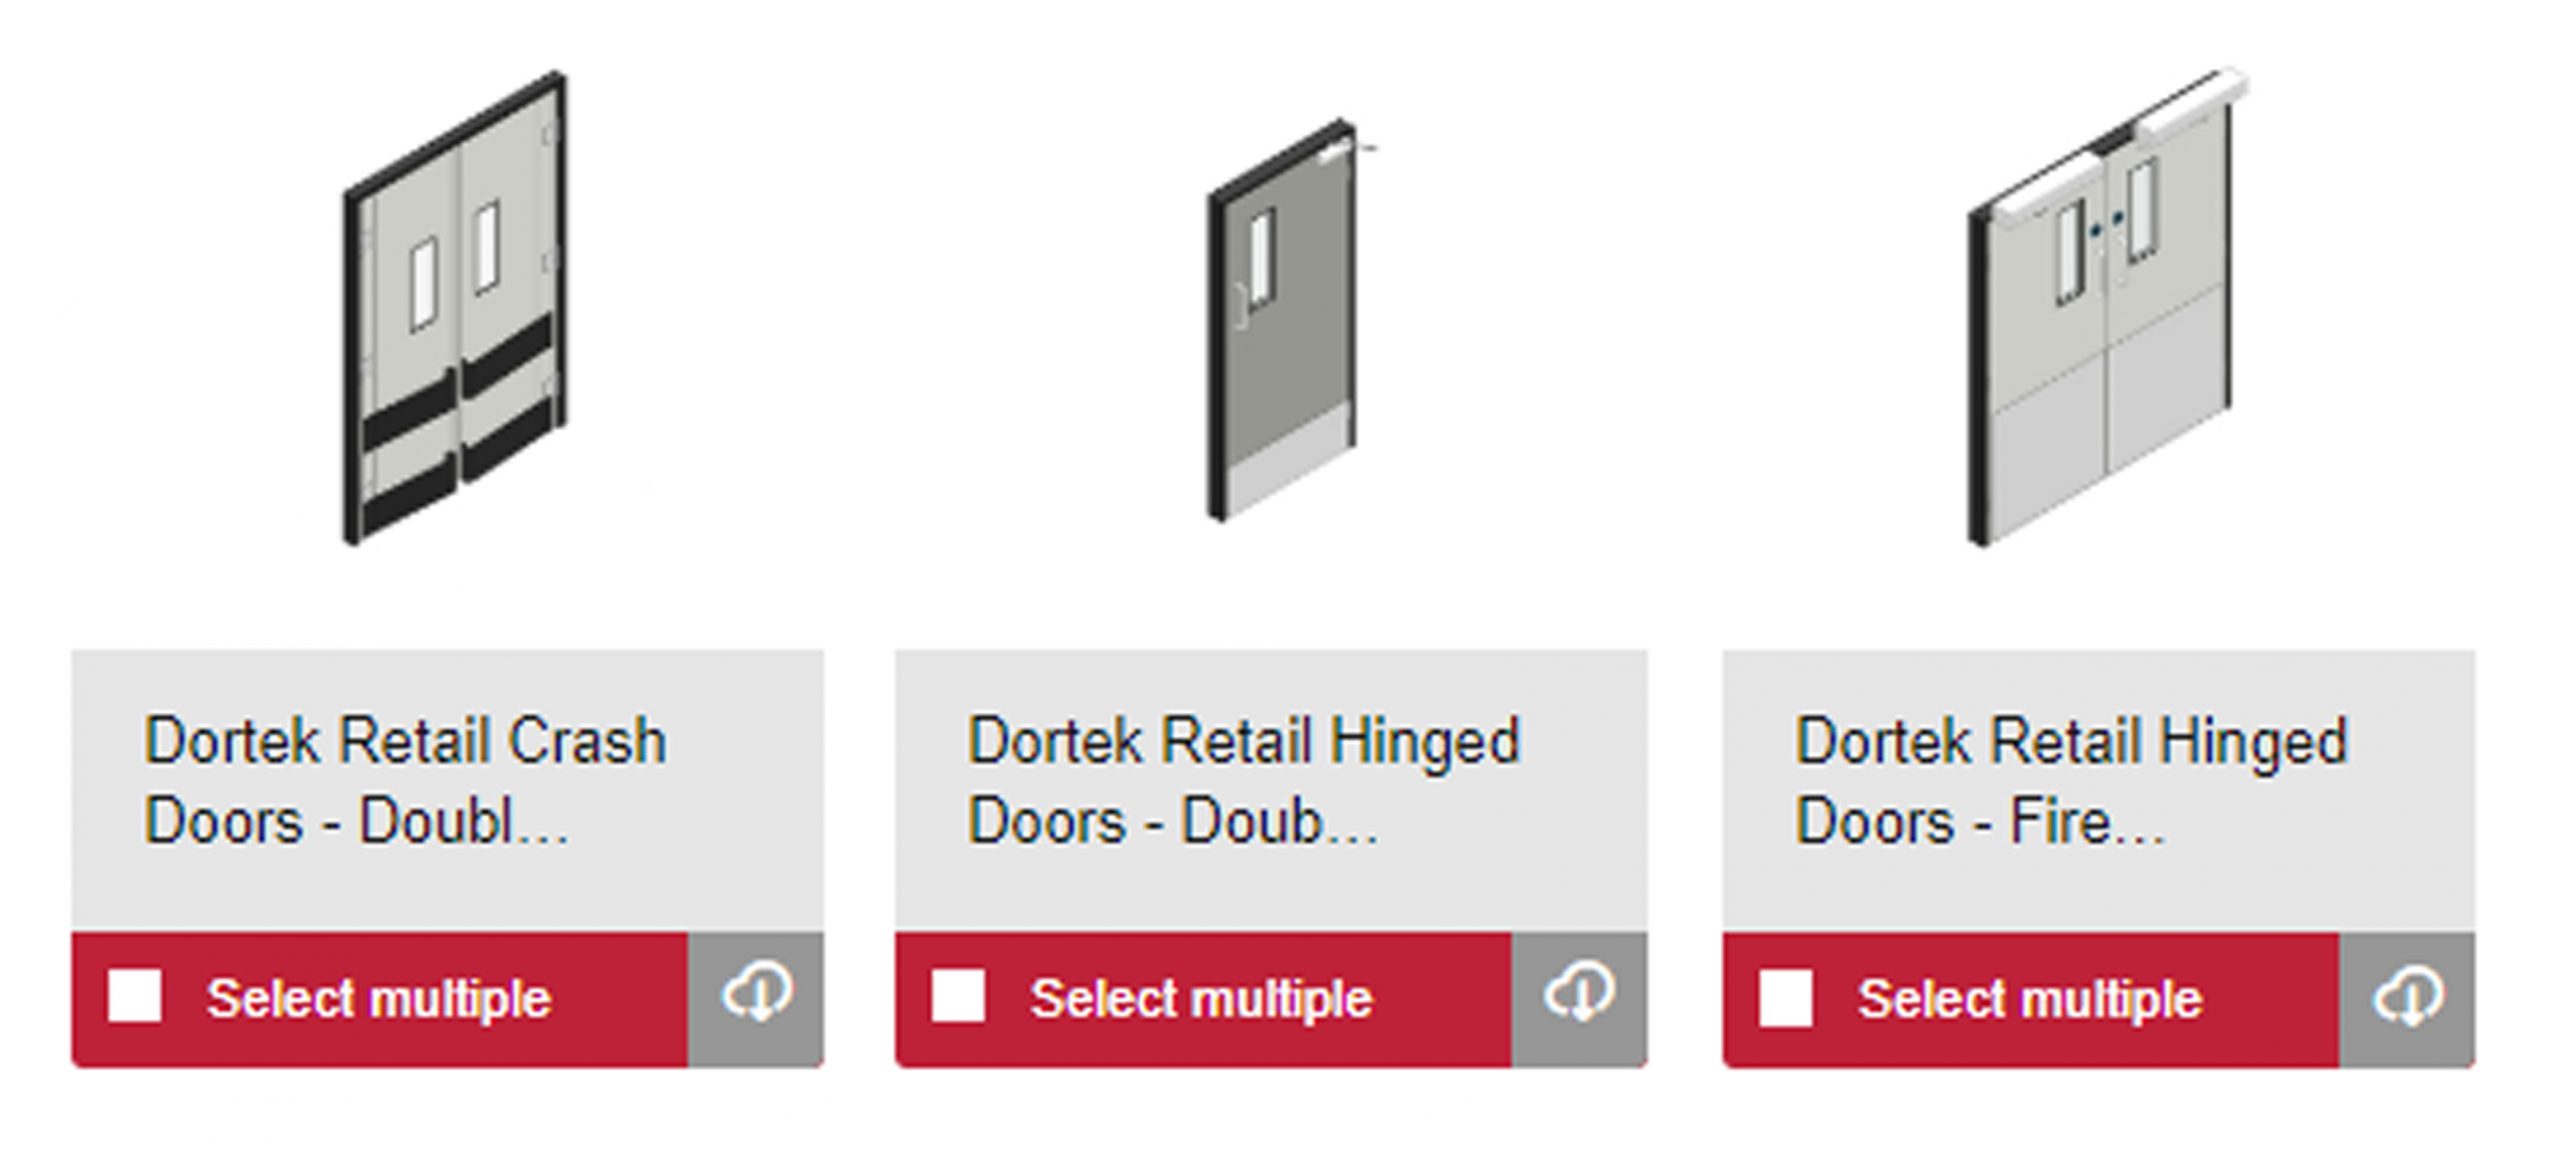 Dortek adds Retail Doors to its BIM objects